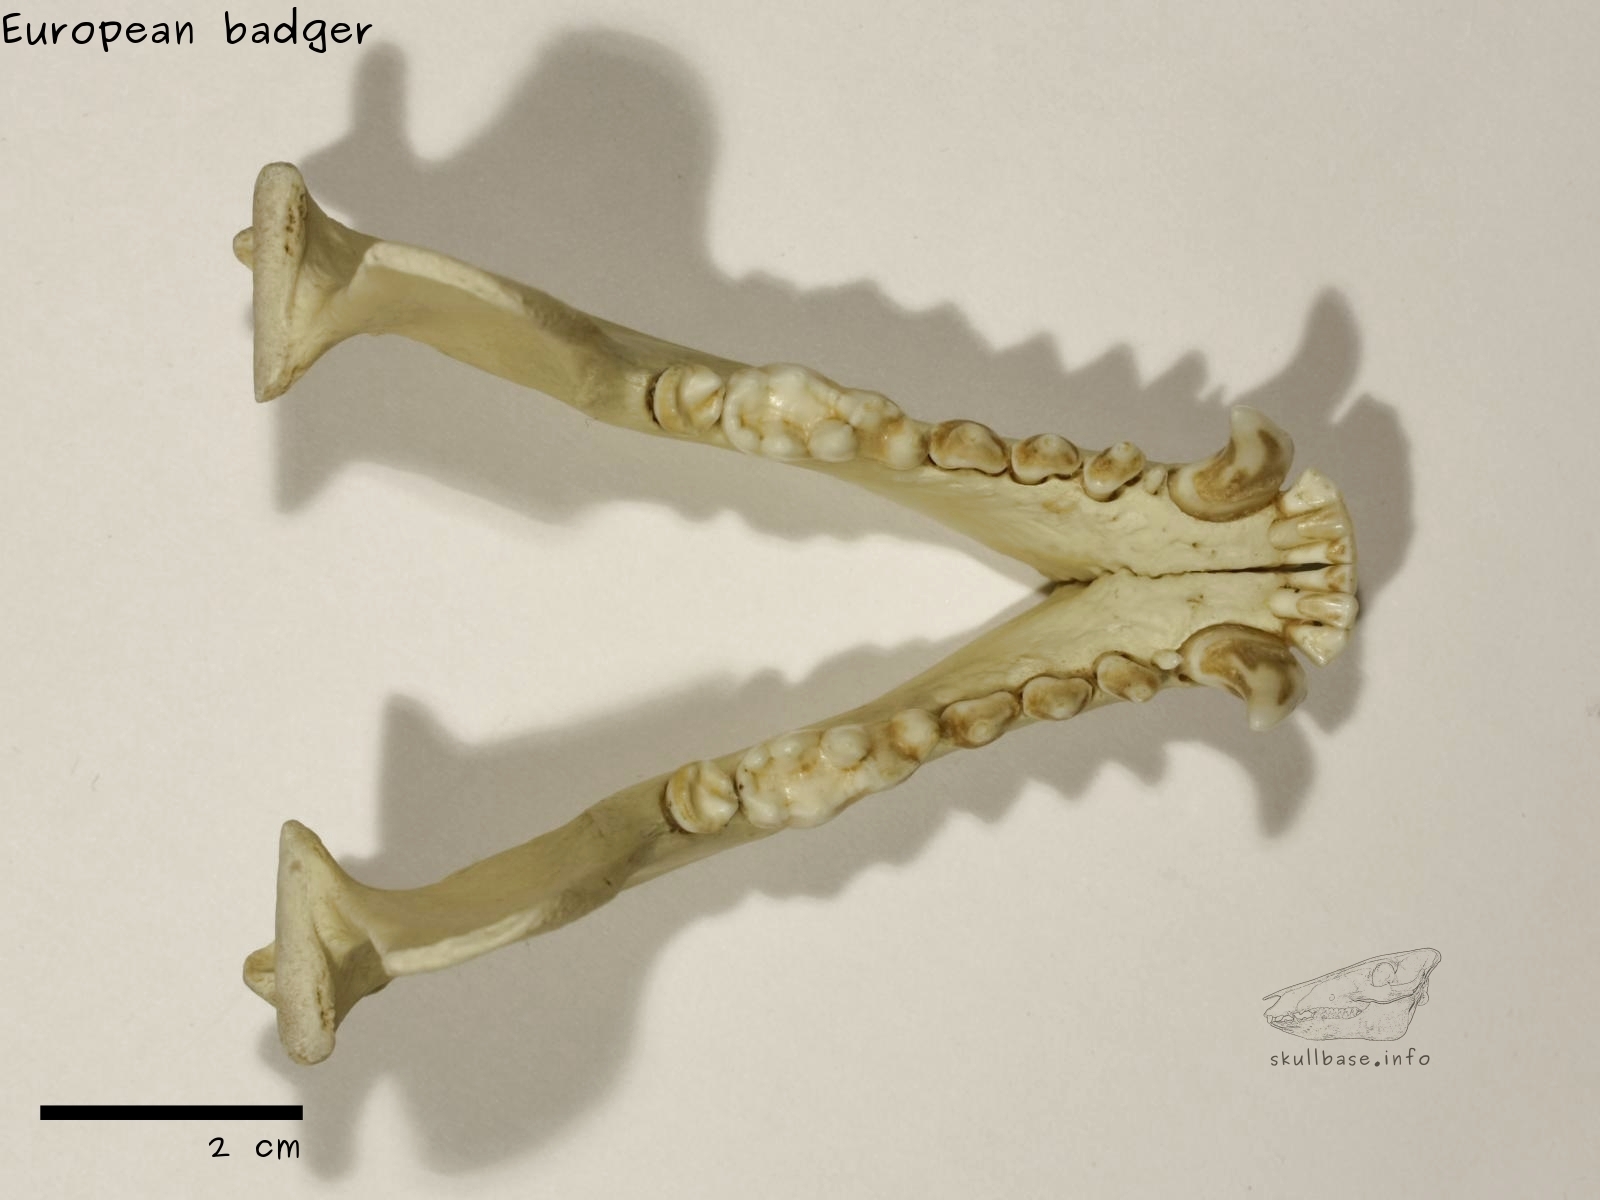 European badger (Meles meles) jaw